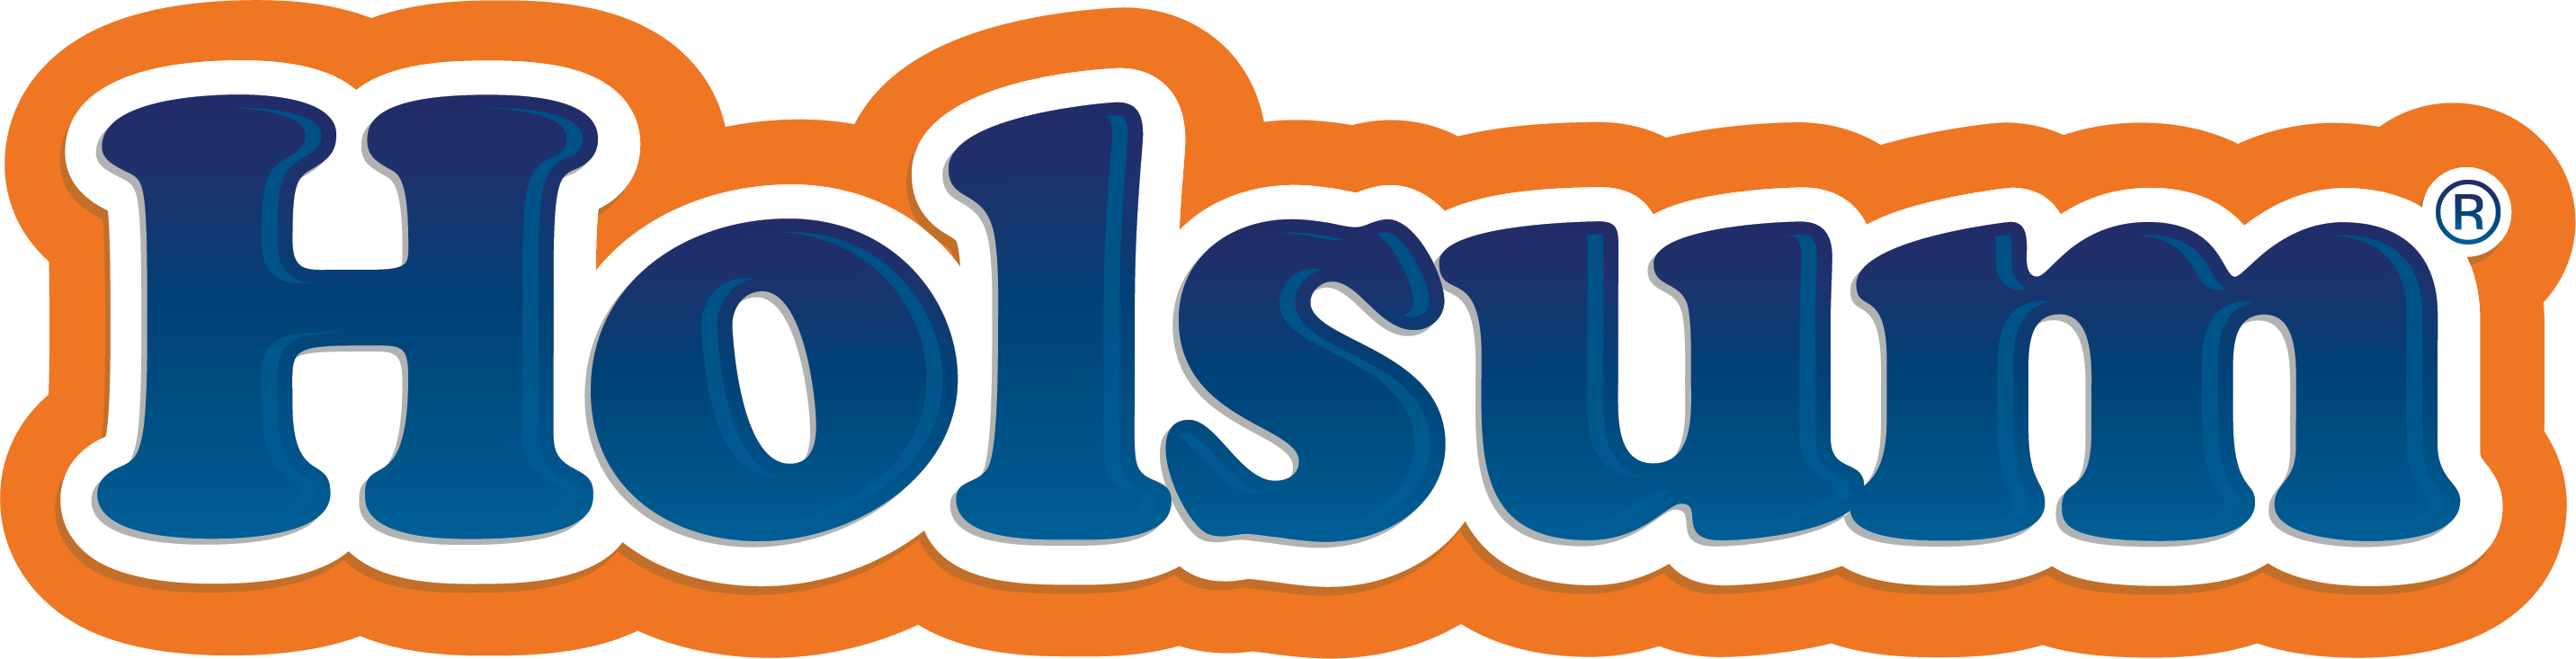 Holsum Logo R